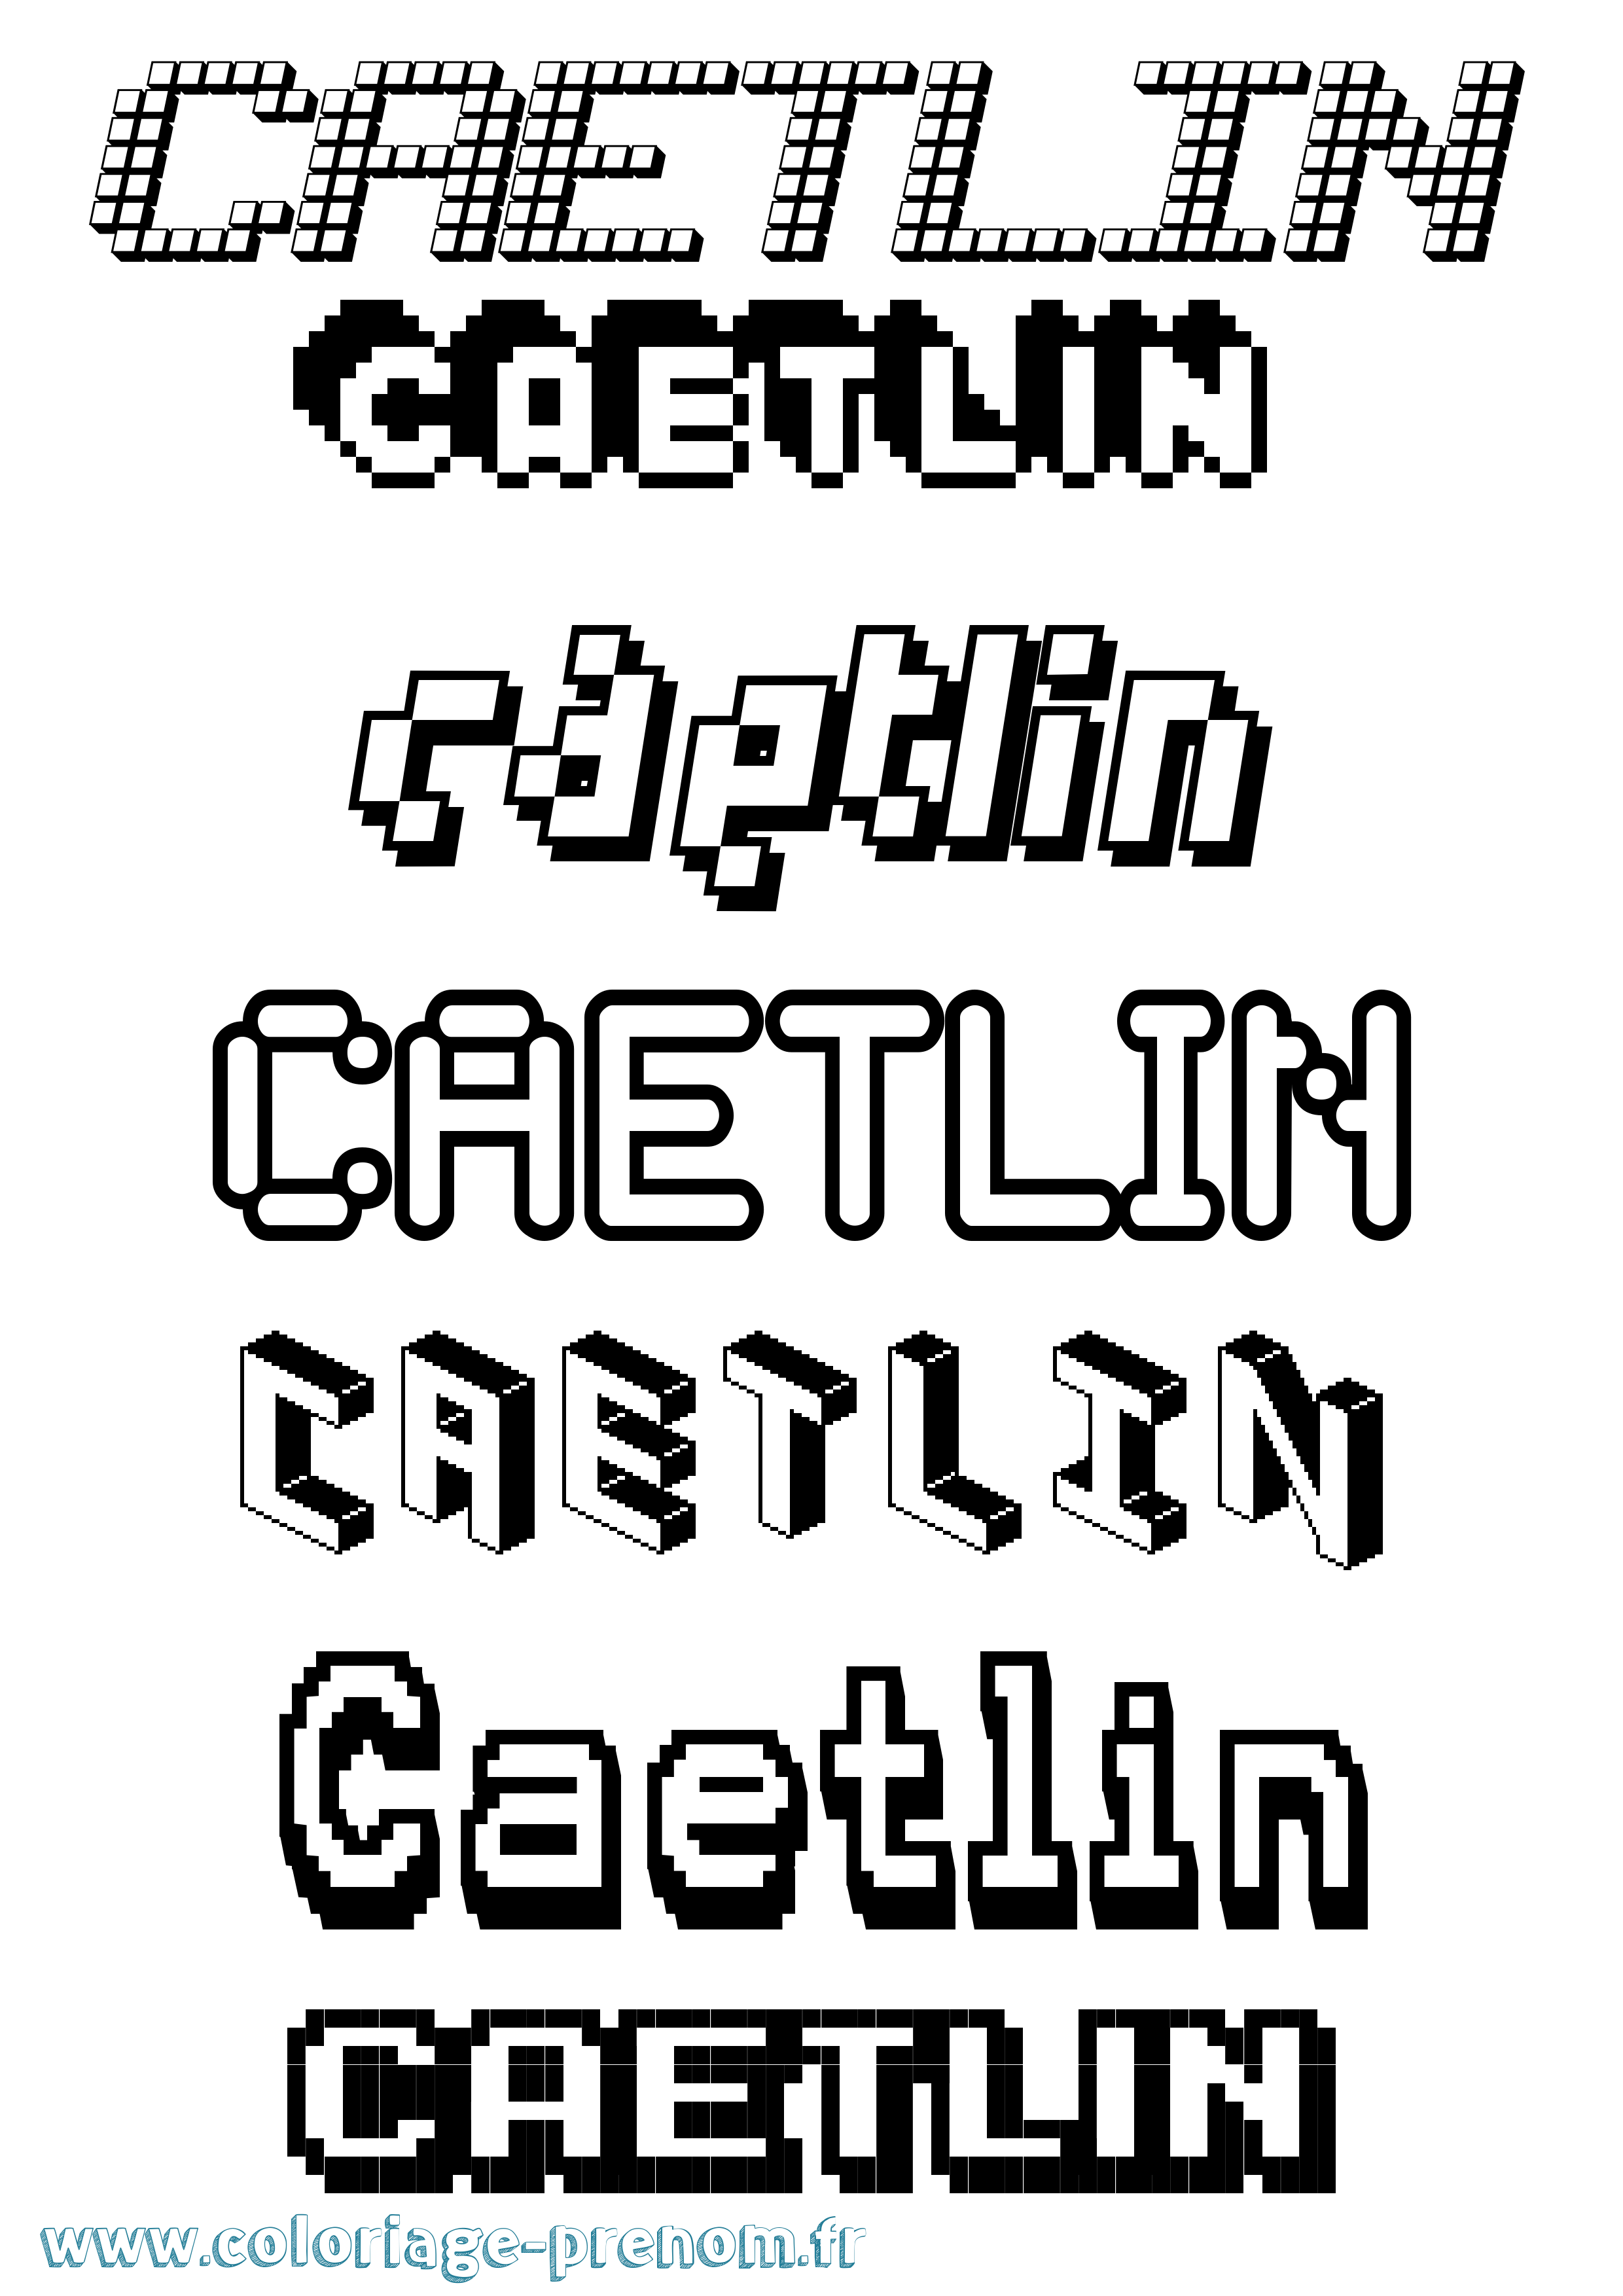 Coloriage prénom Caetlin Pixel